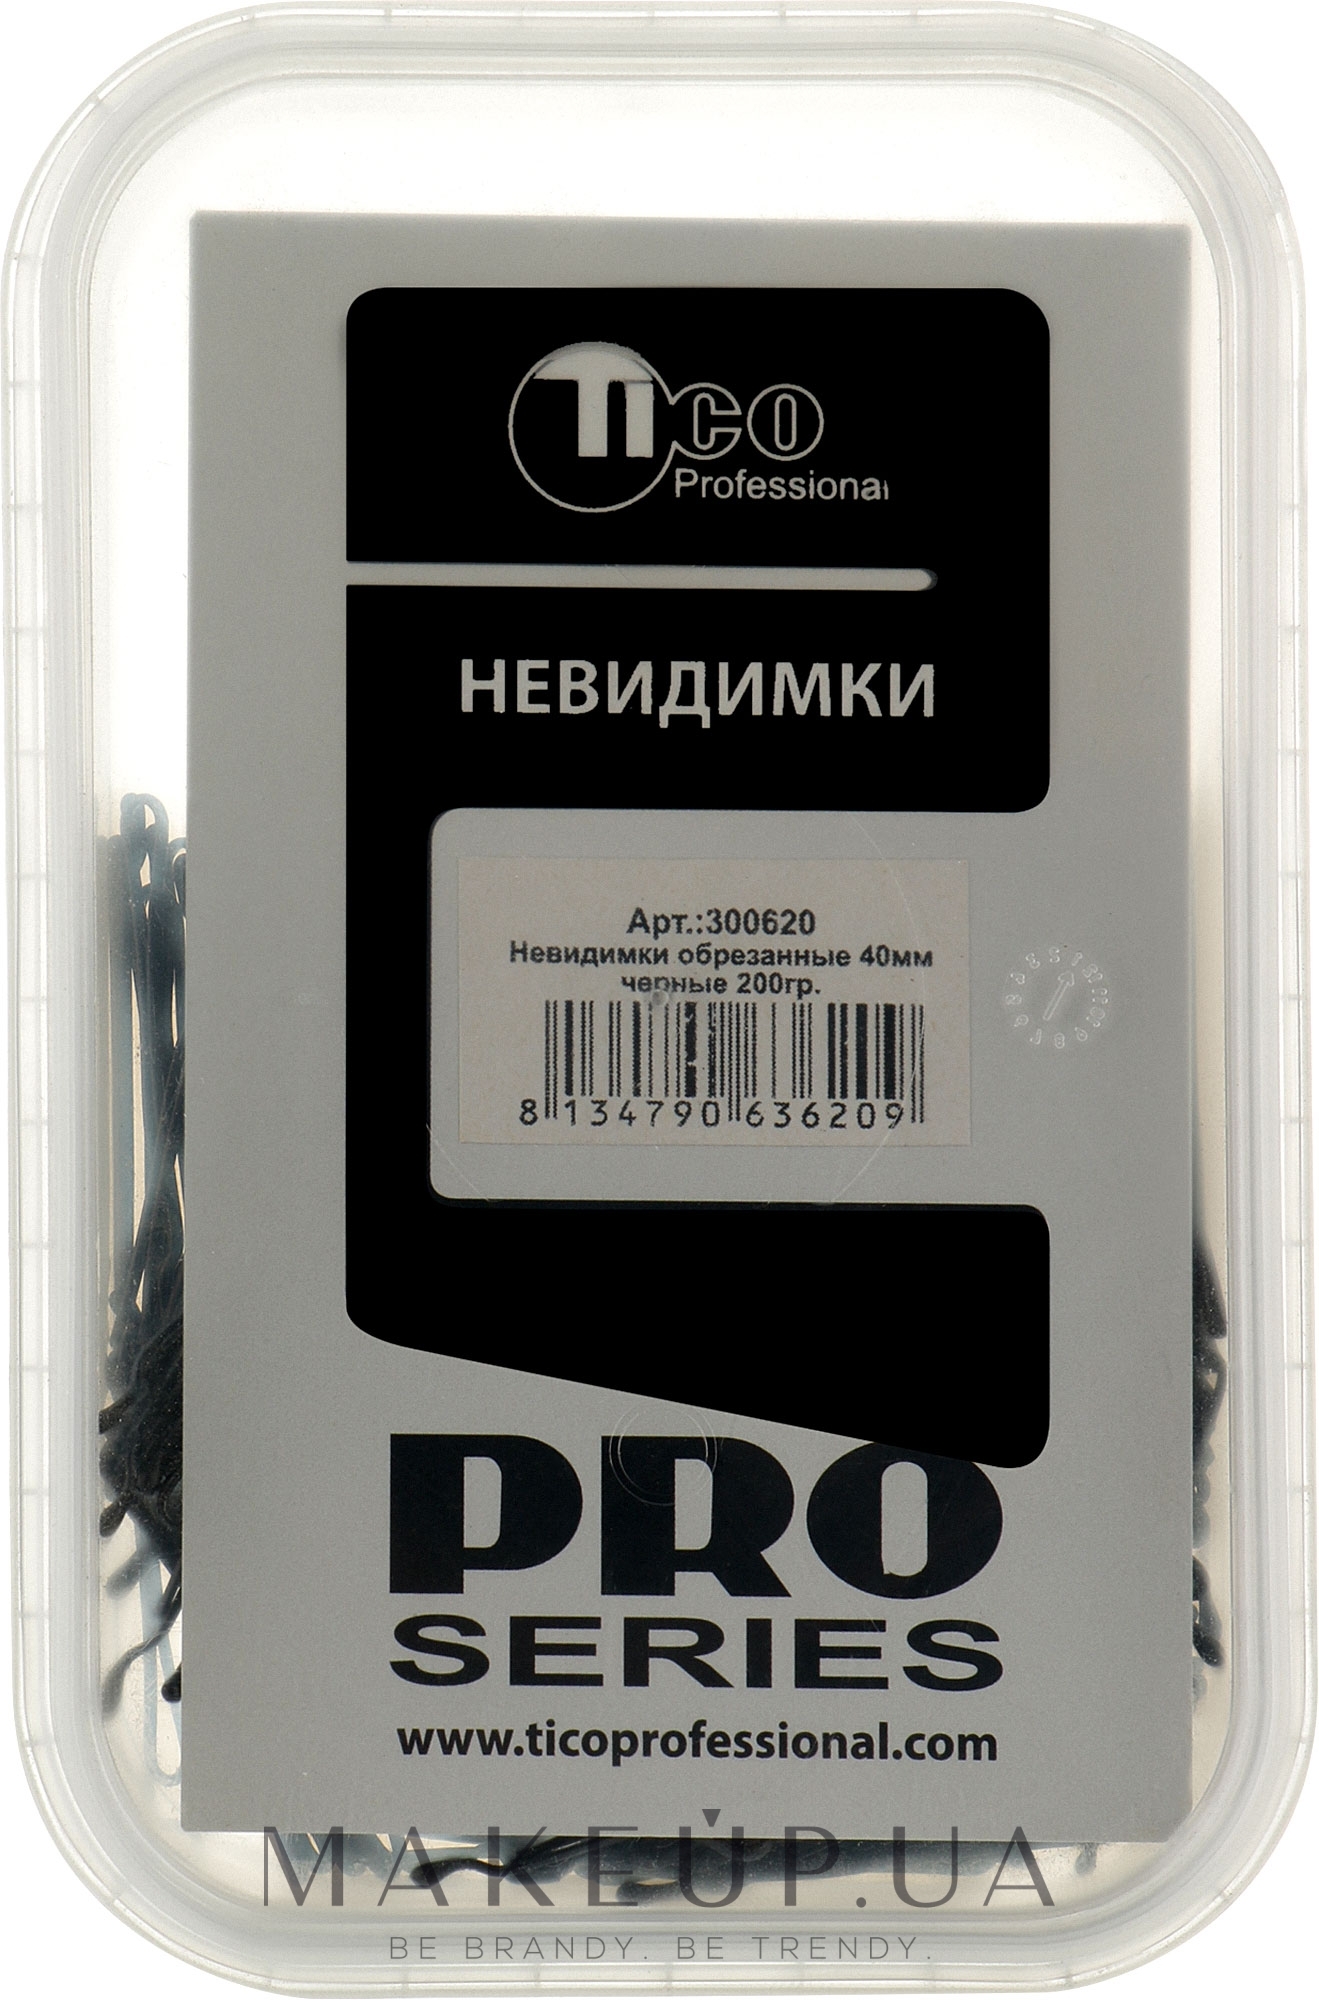 Невидимки обрізані, 40 мм, чорні - Tico Professional — фото 200g